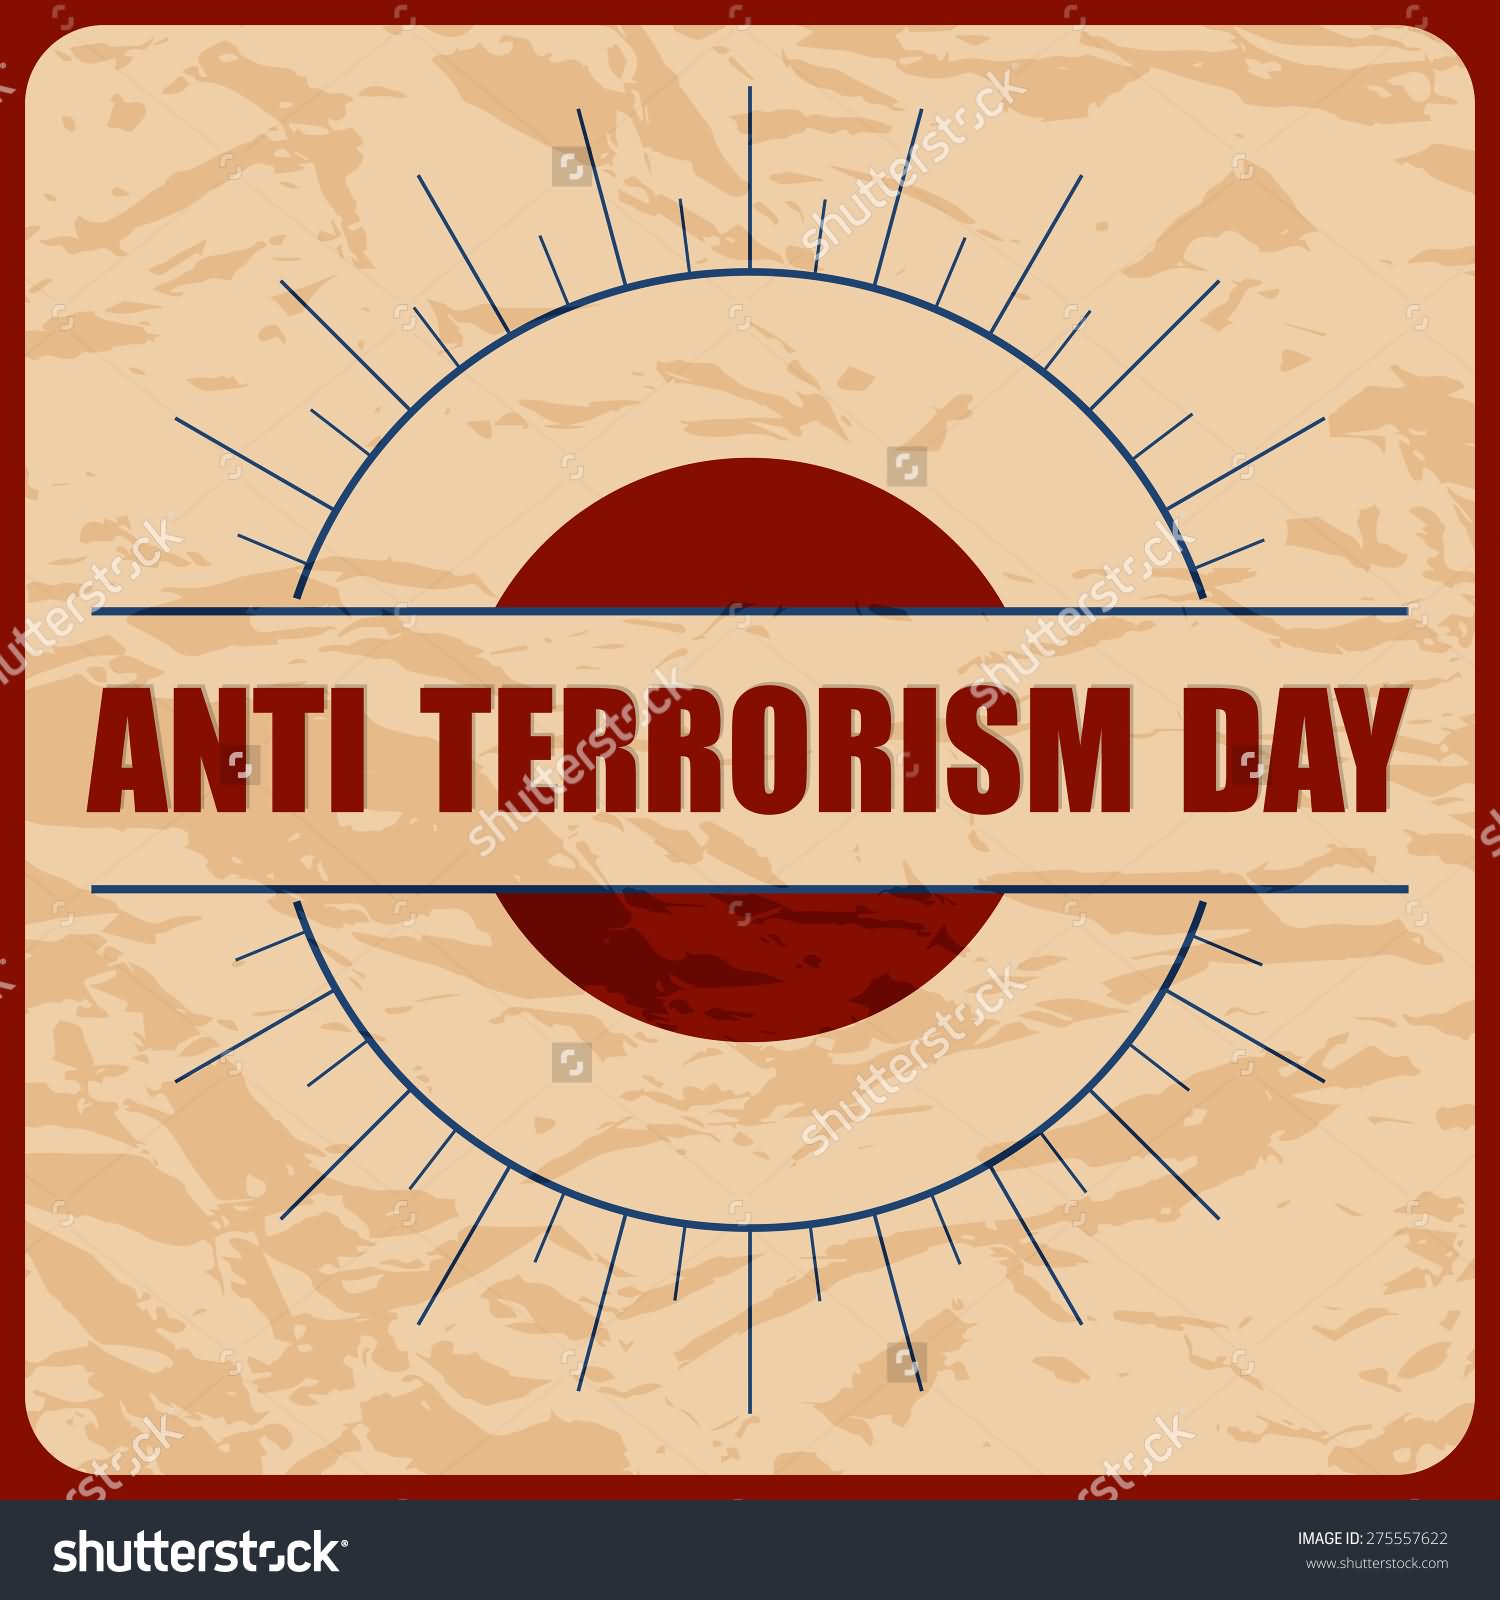 Anti Terrorism Day Image